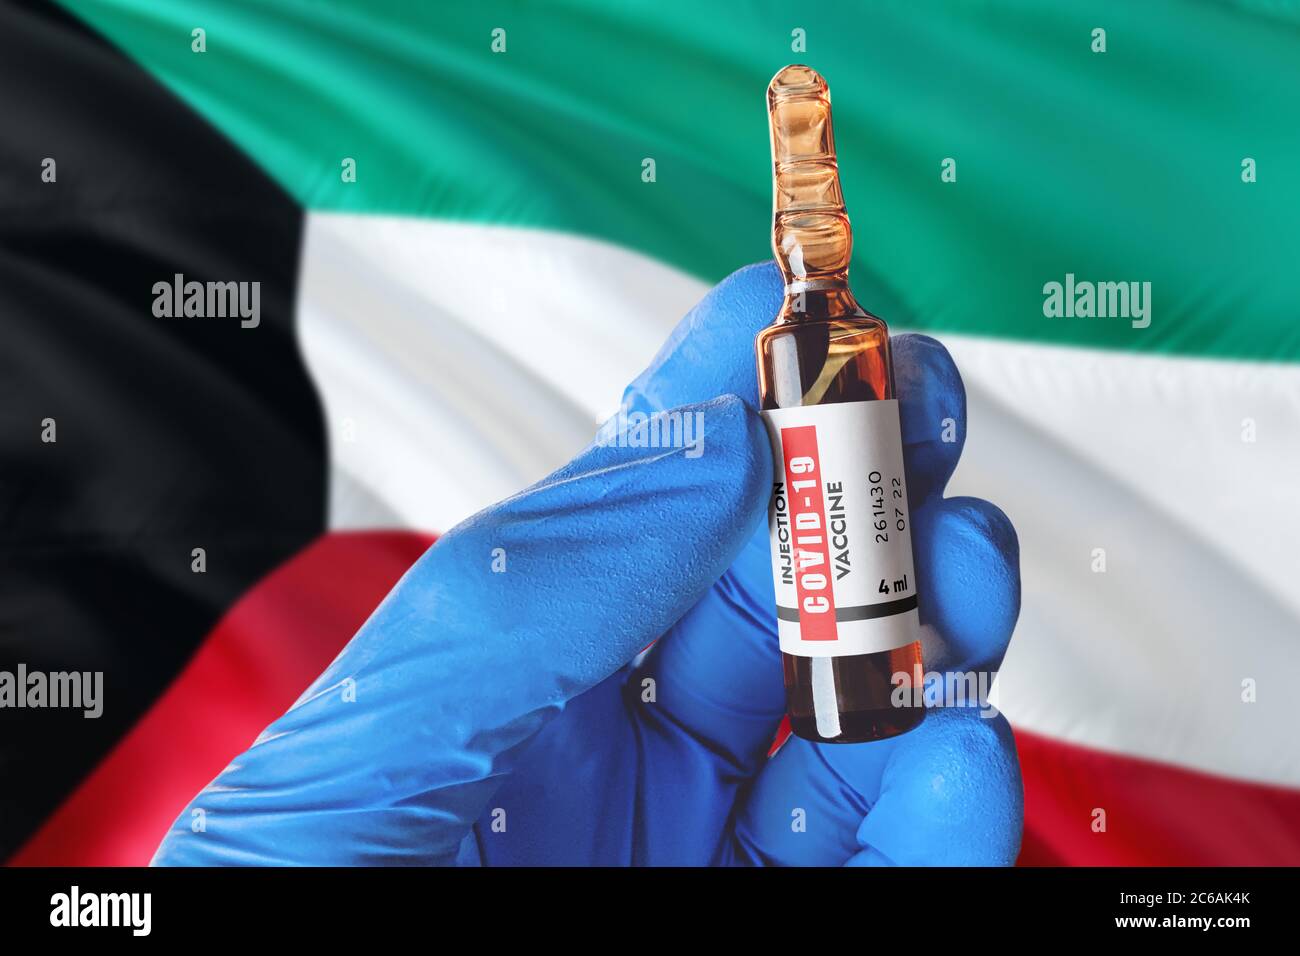 Kuwait Flagge mit Coronavirus Covid-19 Konzept. Arzt mit blauen Schutz medizinische Handschuhe hält eine Impfstoffflasche. Coronavirus covid 19 Impfstoff-Forscherin c Stockfoto